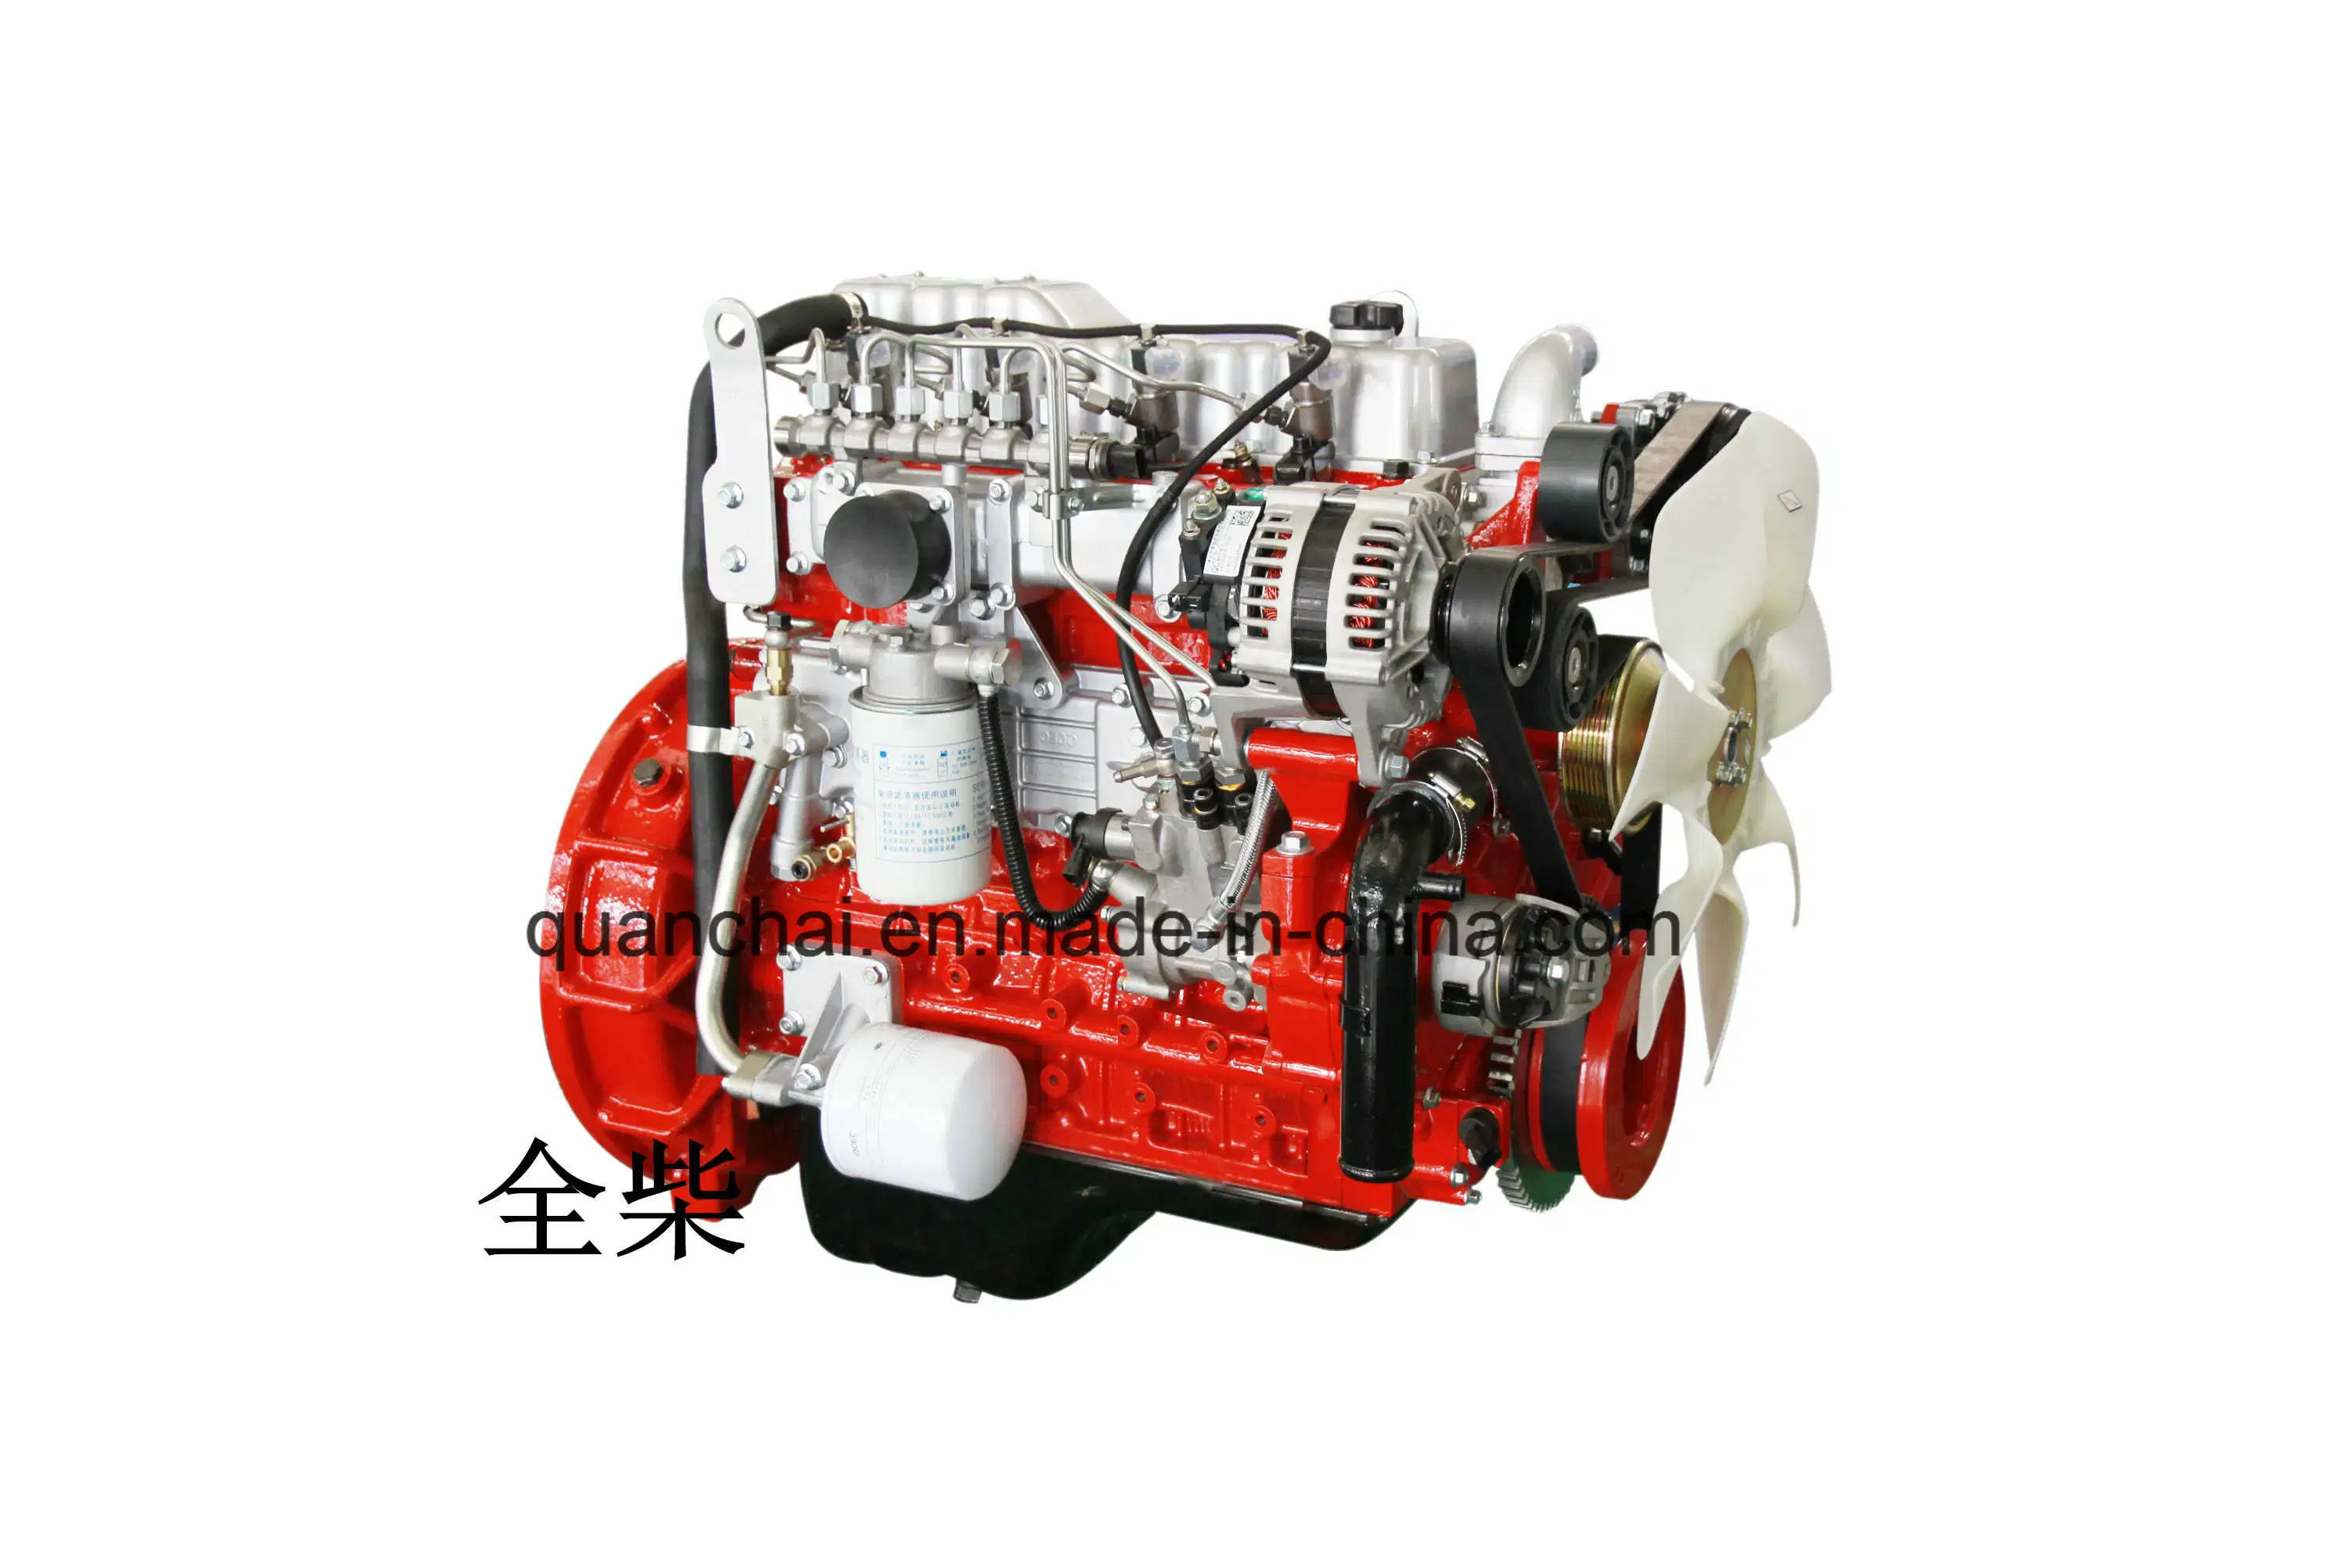 Дизельного двигателя Bosch с электронным управлением высокого давления с общей топливораспределительной рампой